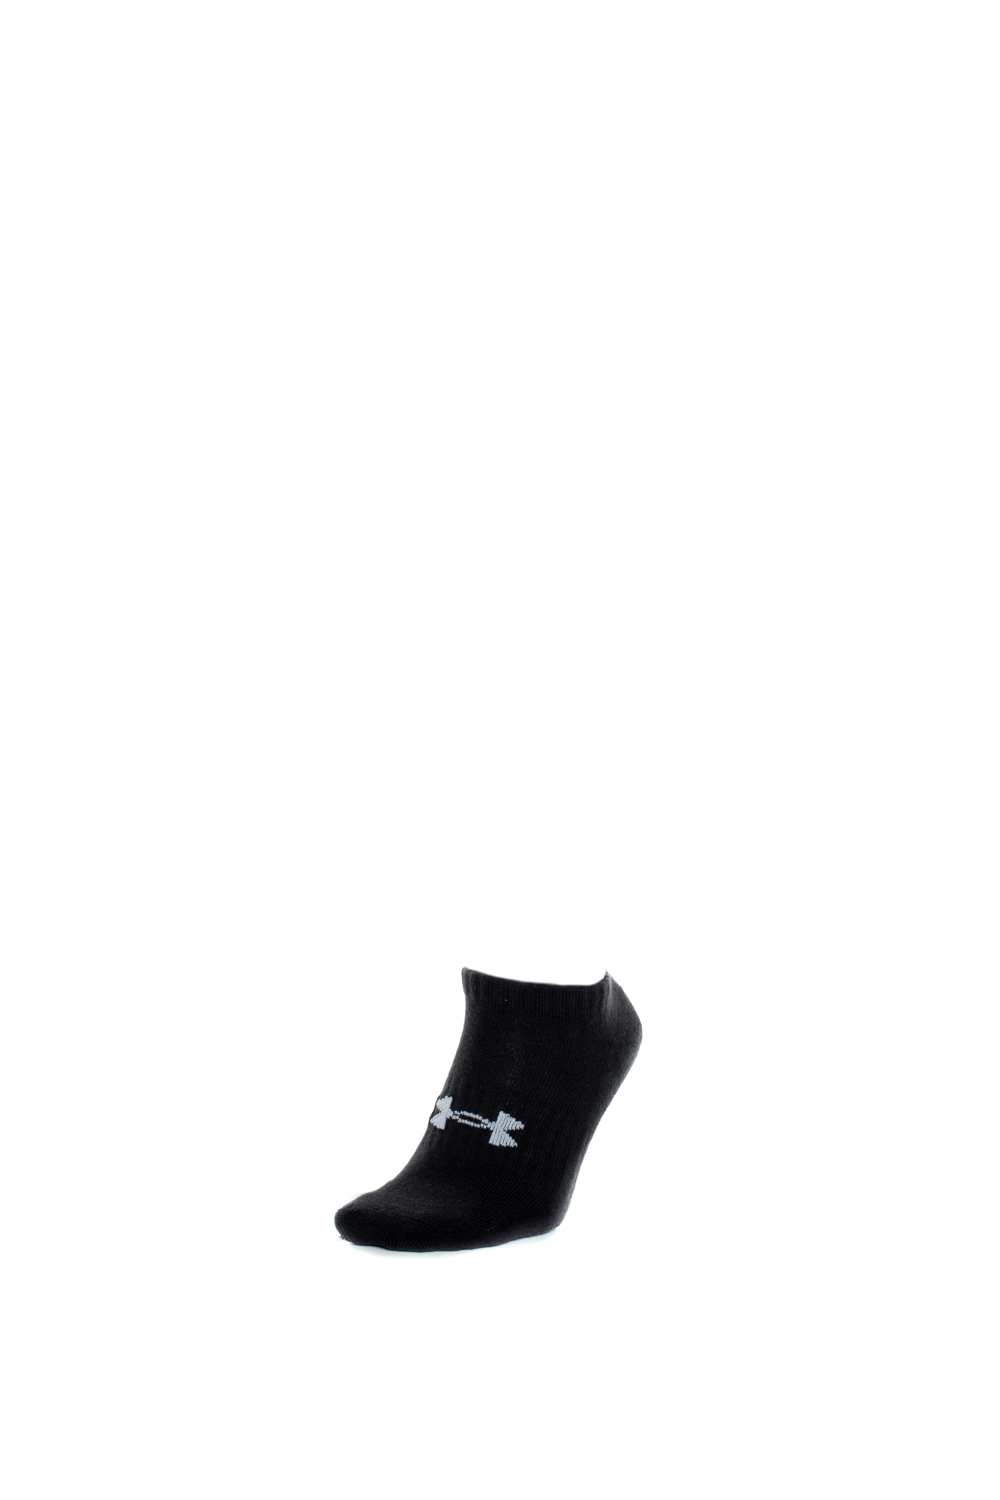 UNDER ARMOUR – Unisex κάλτσες UNDER ARMOUR Core No Show 3Pk μαύρες 1821721.0-7171